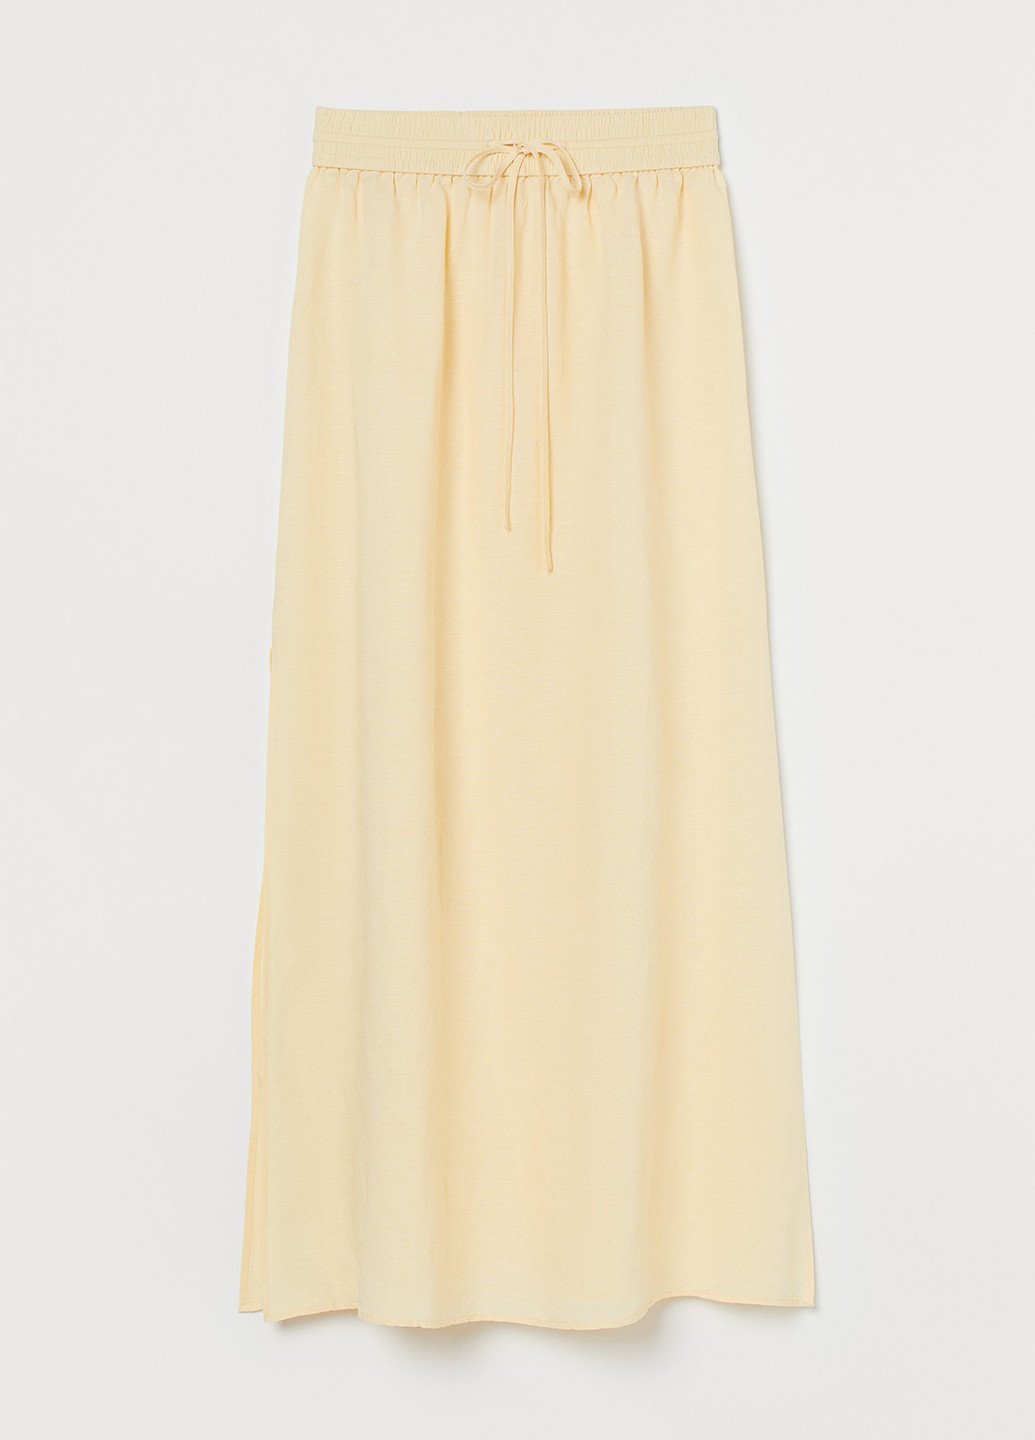 Светло-желтая кэжуал однотонная юбка H&M а-силуэта (трапеция)